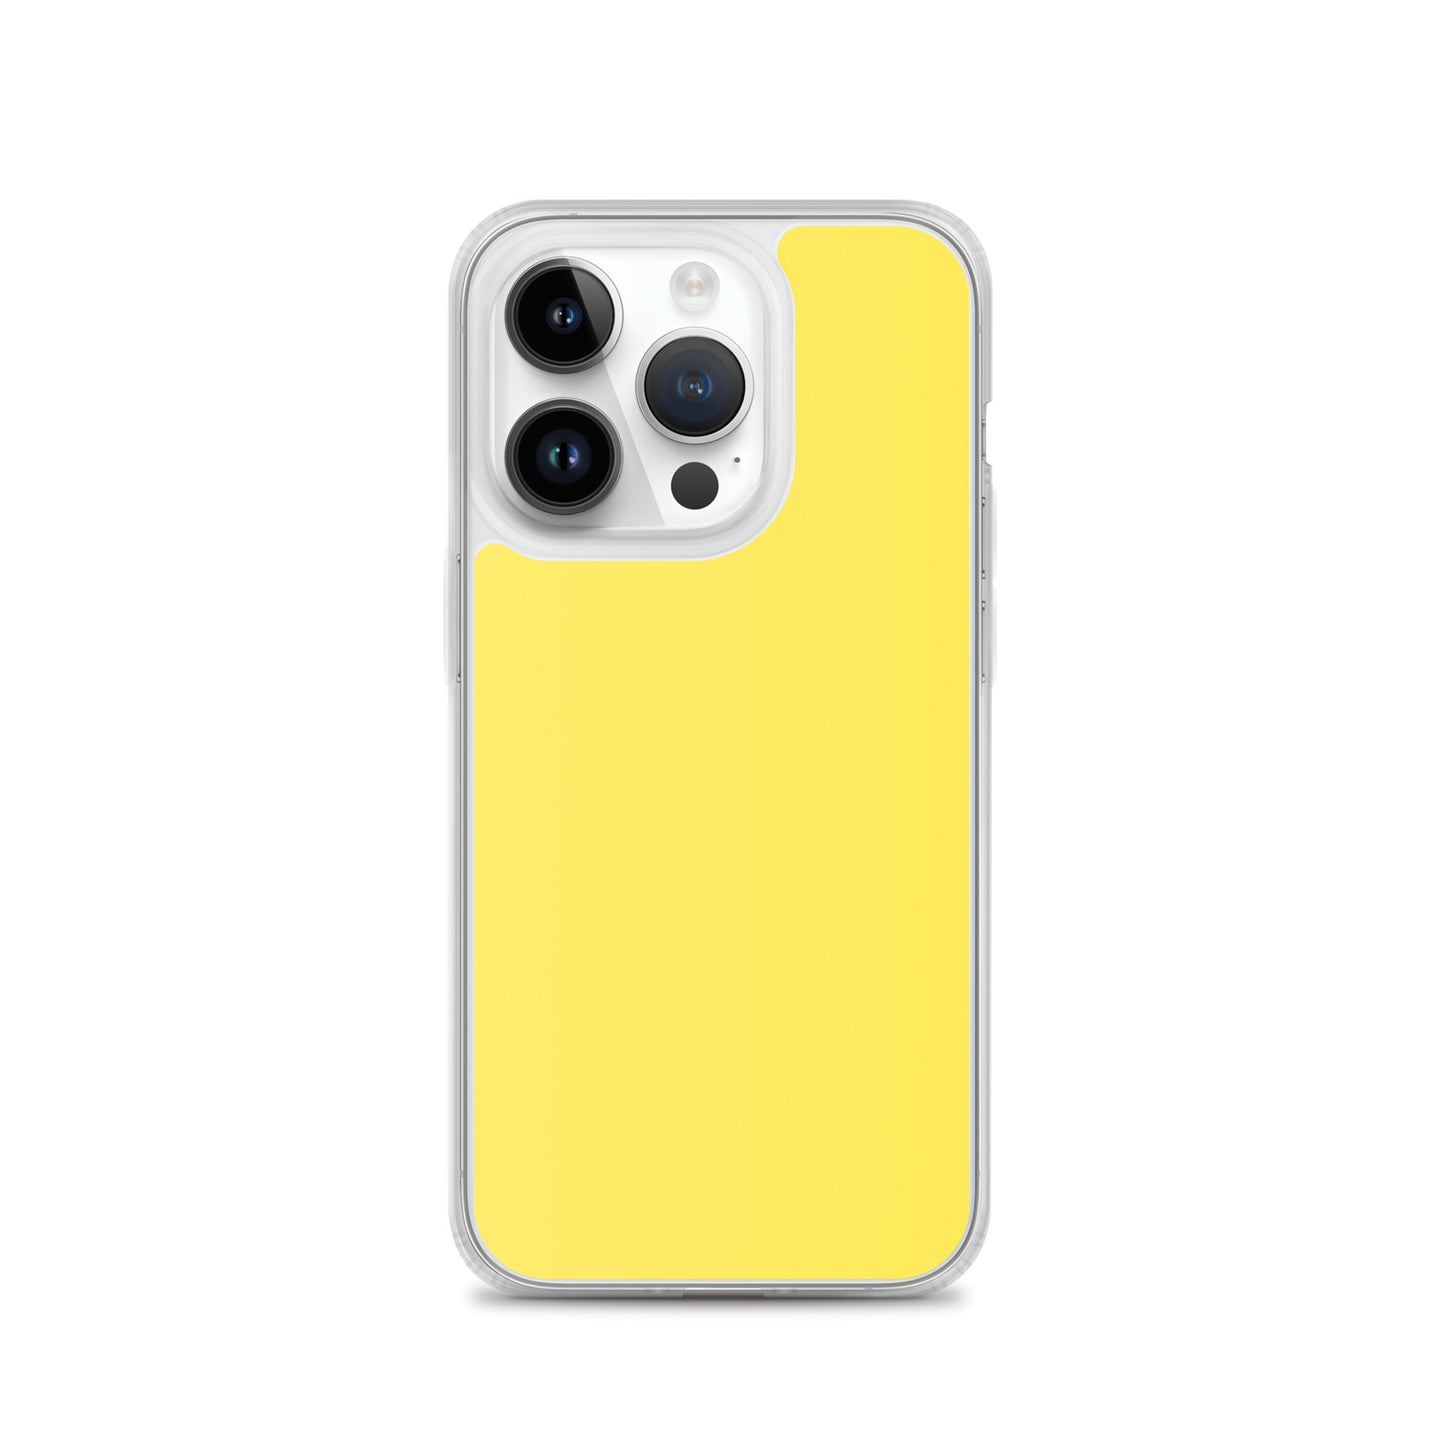 Coque iPhone jaune vif